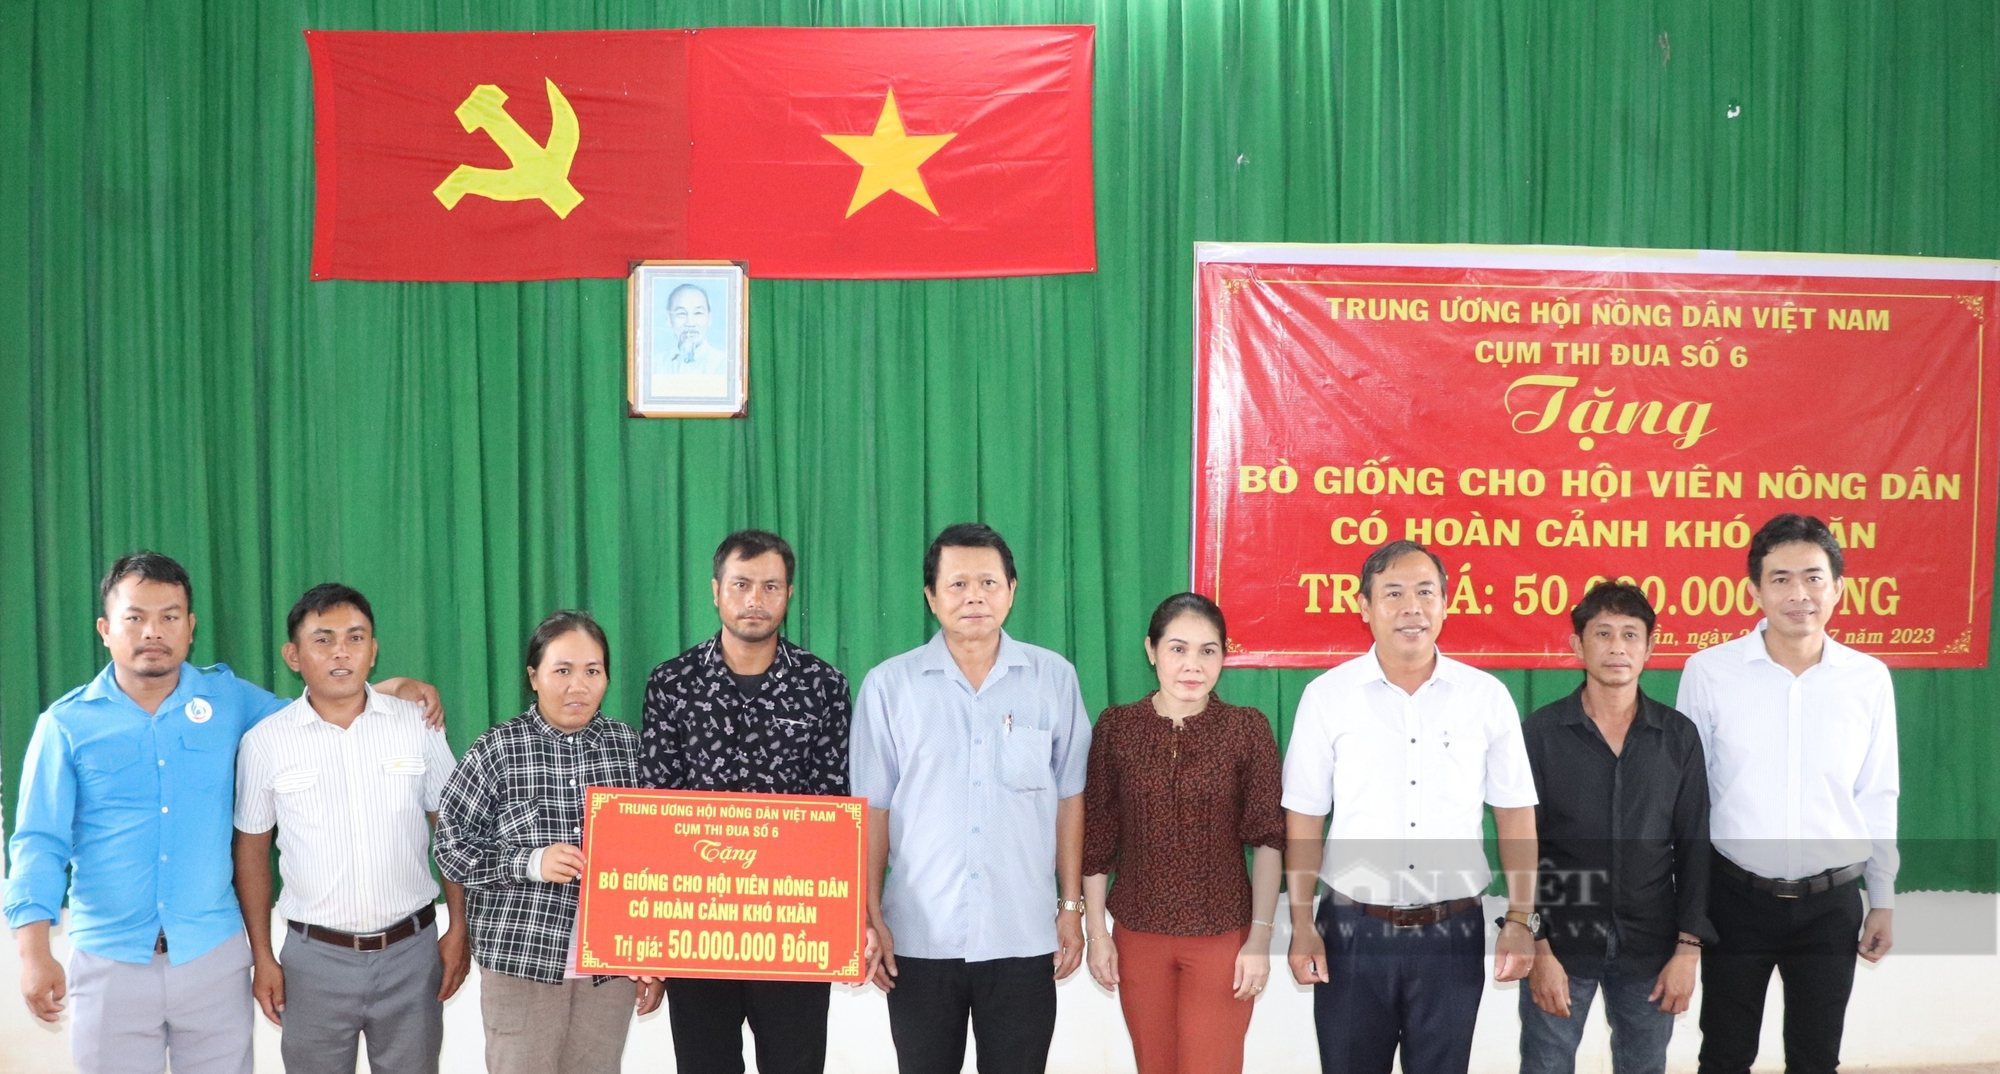 Trung ương Hội Nông dân Việt Nam tặng bò sinh sản cho nông dân nghèo ở Bình Thuận - Ảnh 1.